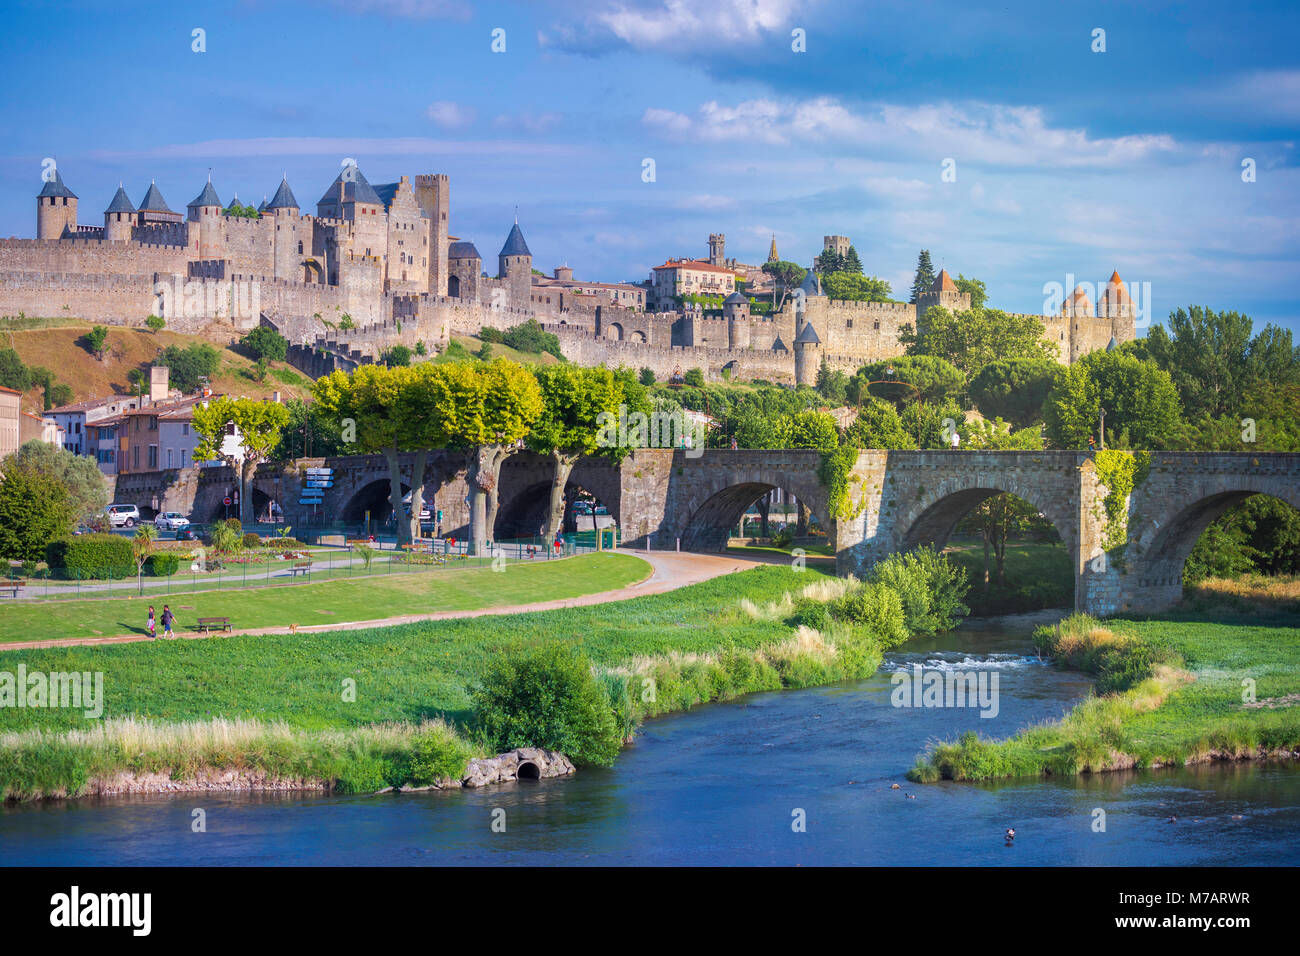 France,  Aude region, Carcassonne city, la cite, medieval fortress, W.H., Stock Photo